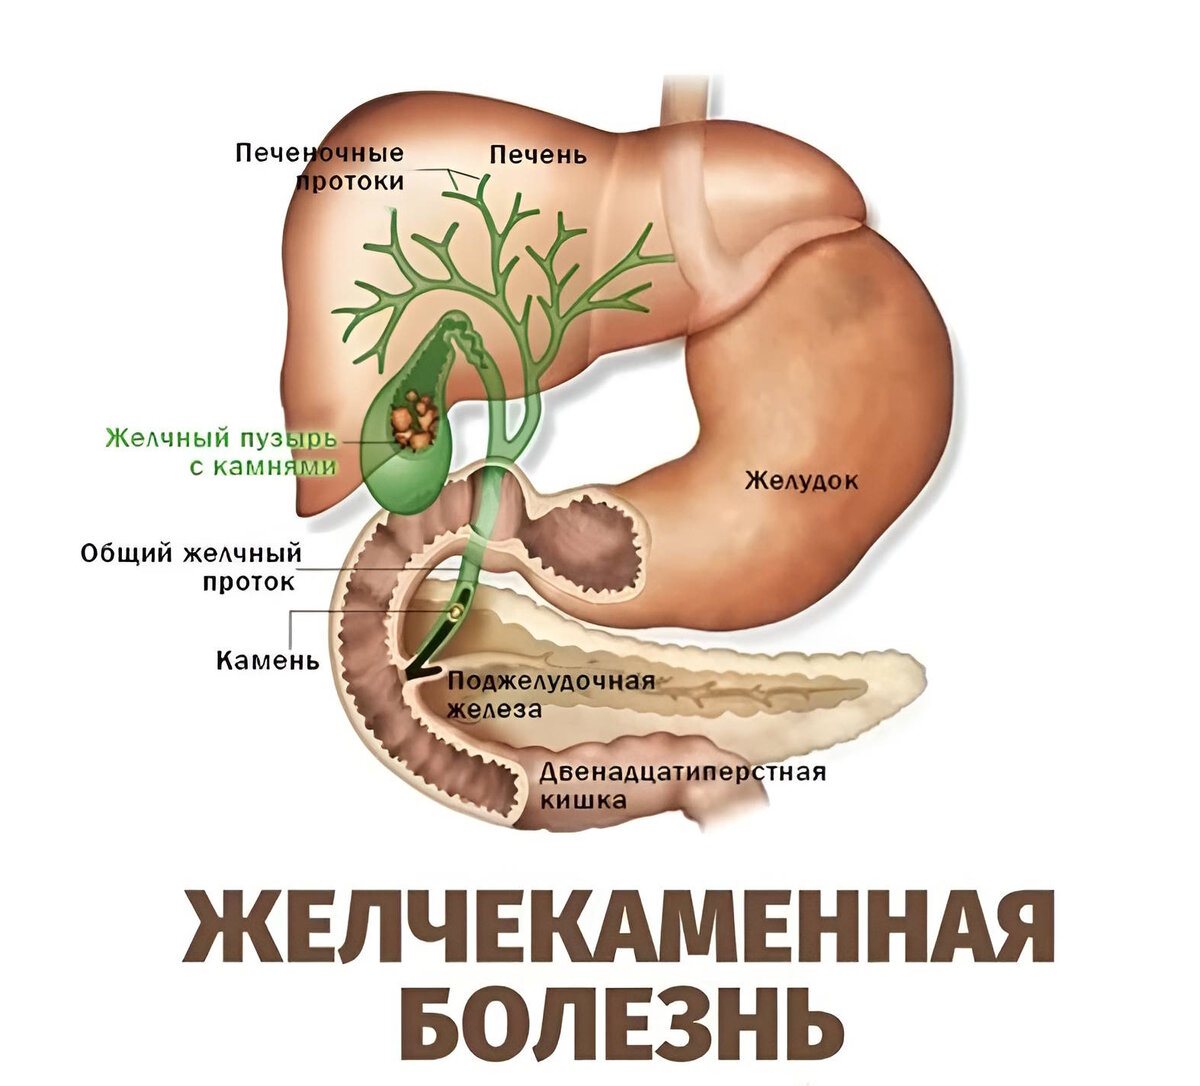 Болезни желчного пузыря у мужчин. Анатомия ЖКТ желчный пузырь. Желчный пузырь и желчные протоки анатомия. Камни поджелудочной железы ЖКБ. Желчекаменная болезнь анатомия.